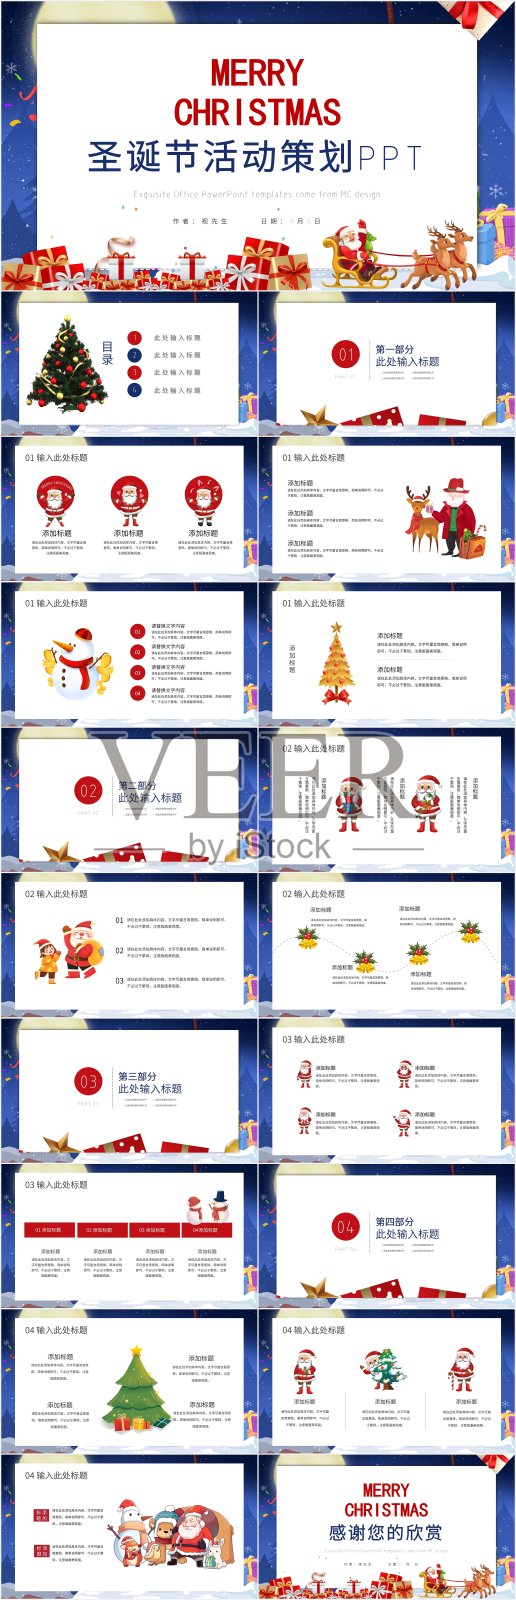 蓝色卡通风圣诞节策划PPT模板设计模板素材